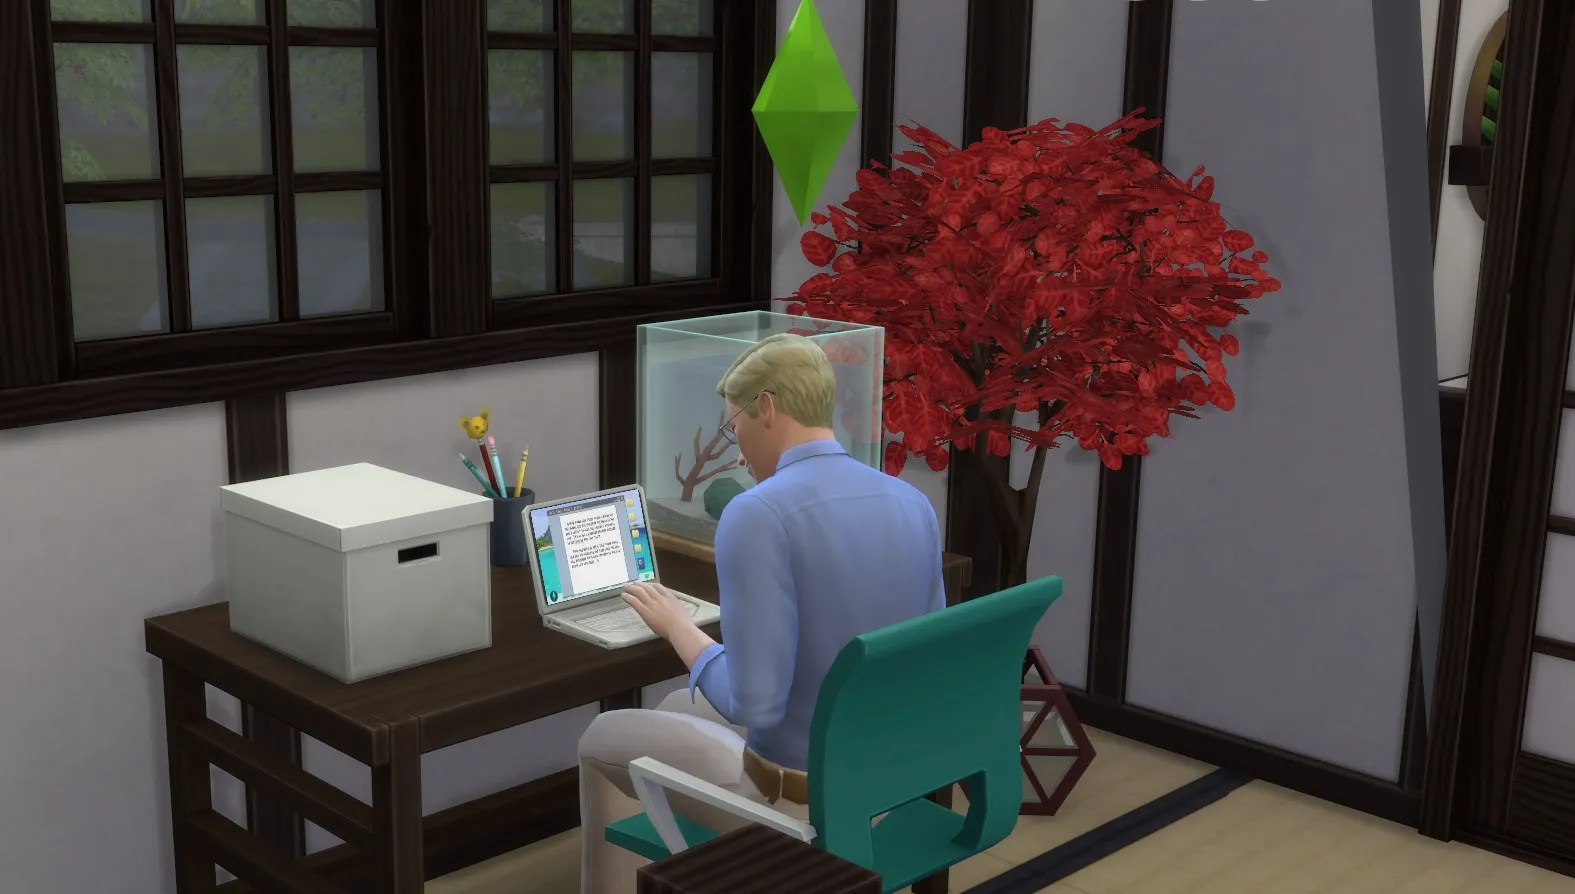 Les Sims 4 : Image d'un Sim sur son ordinateur portable